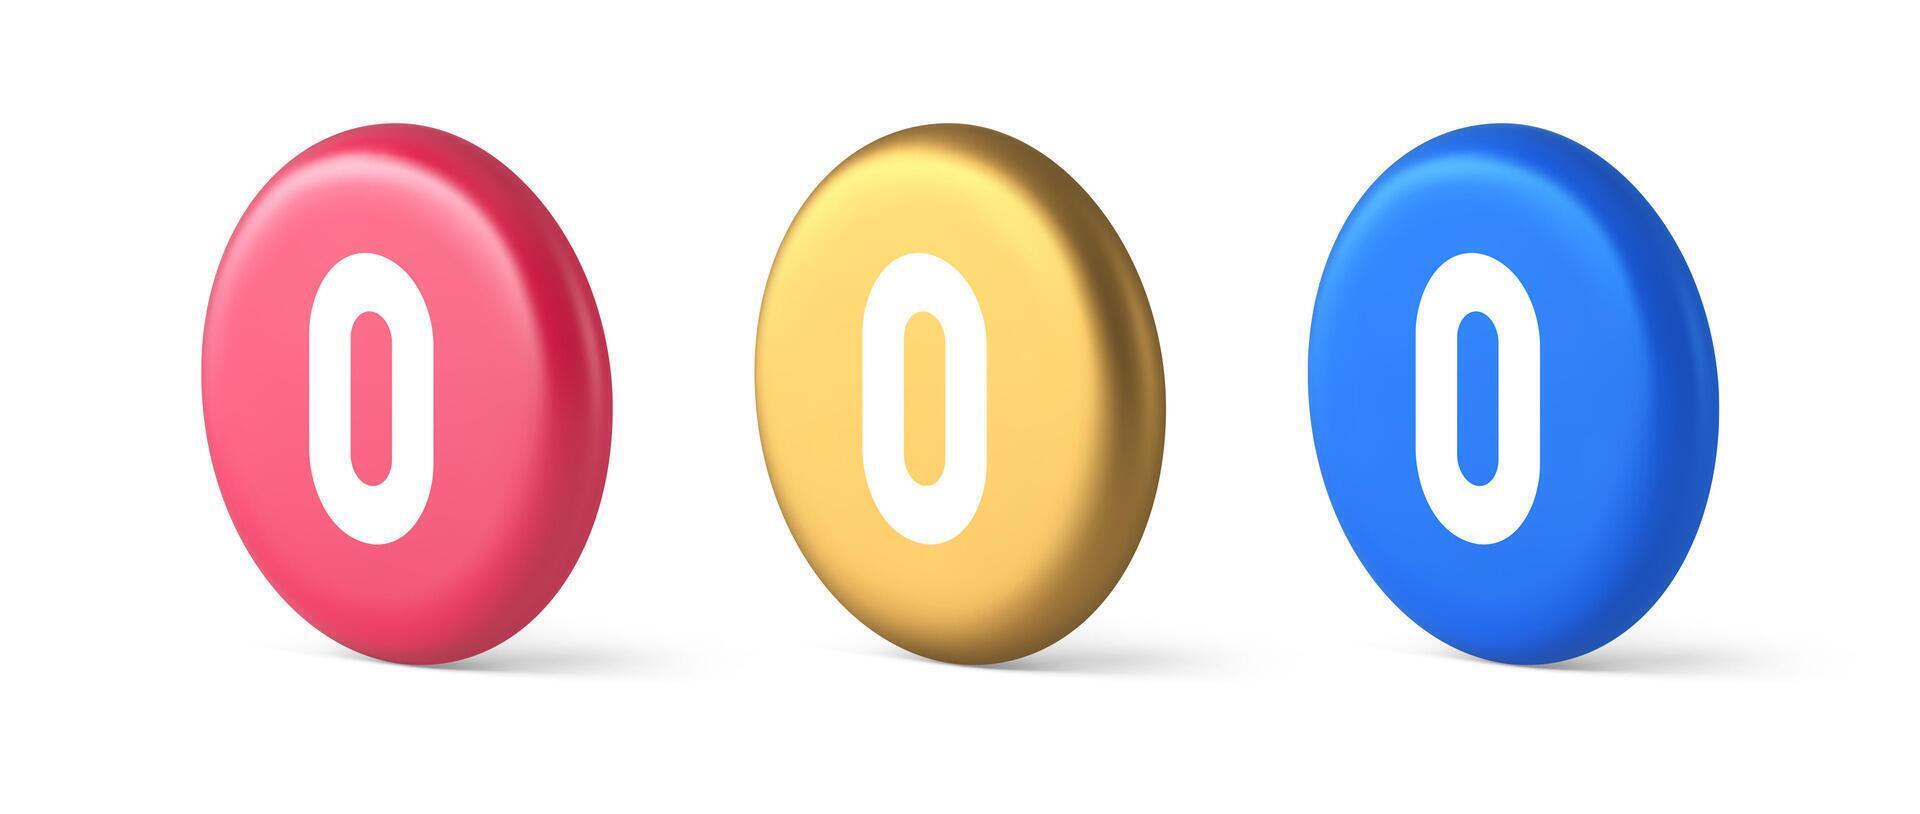 zéro personnage nombre bouton numérique signe pour math compte cyberespace la communication 3d isométrique cercle icône vecteur